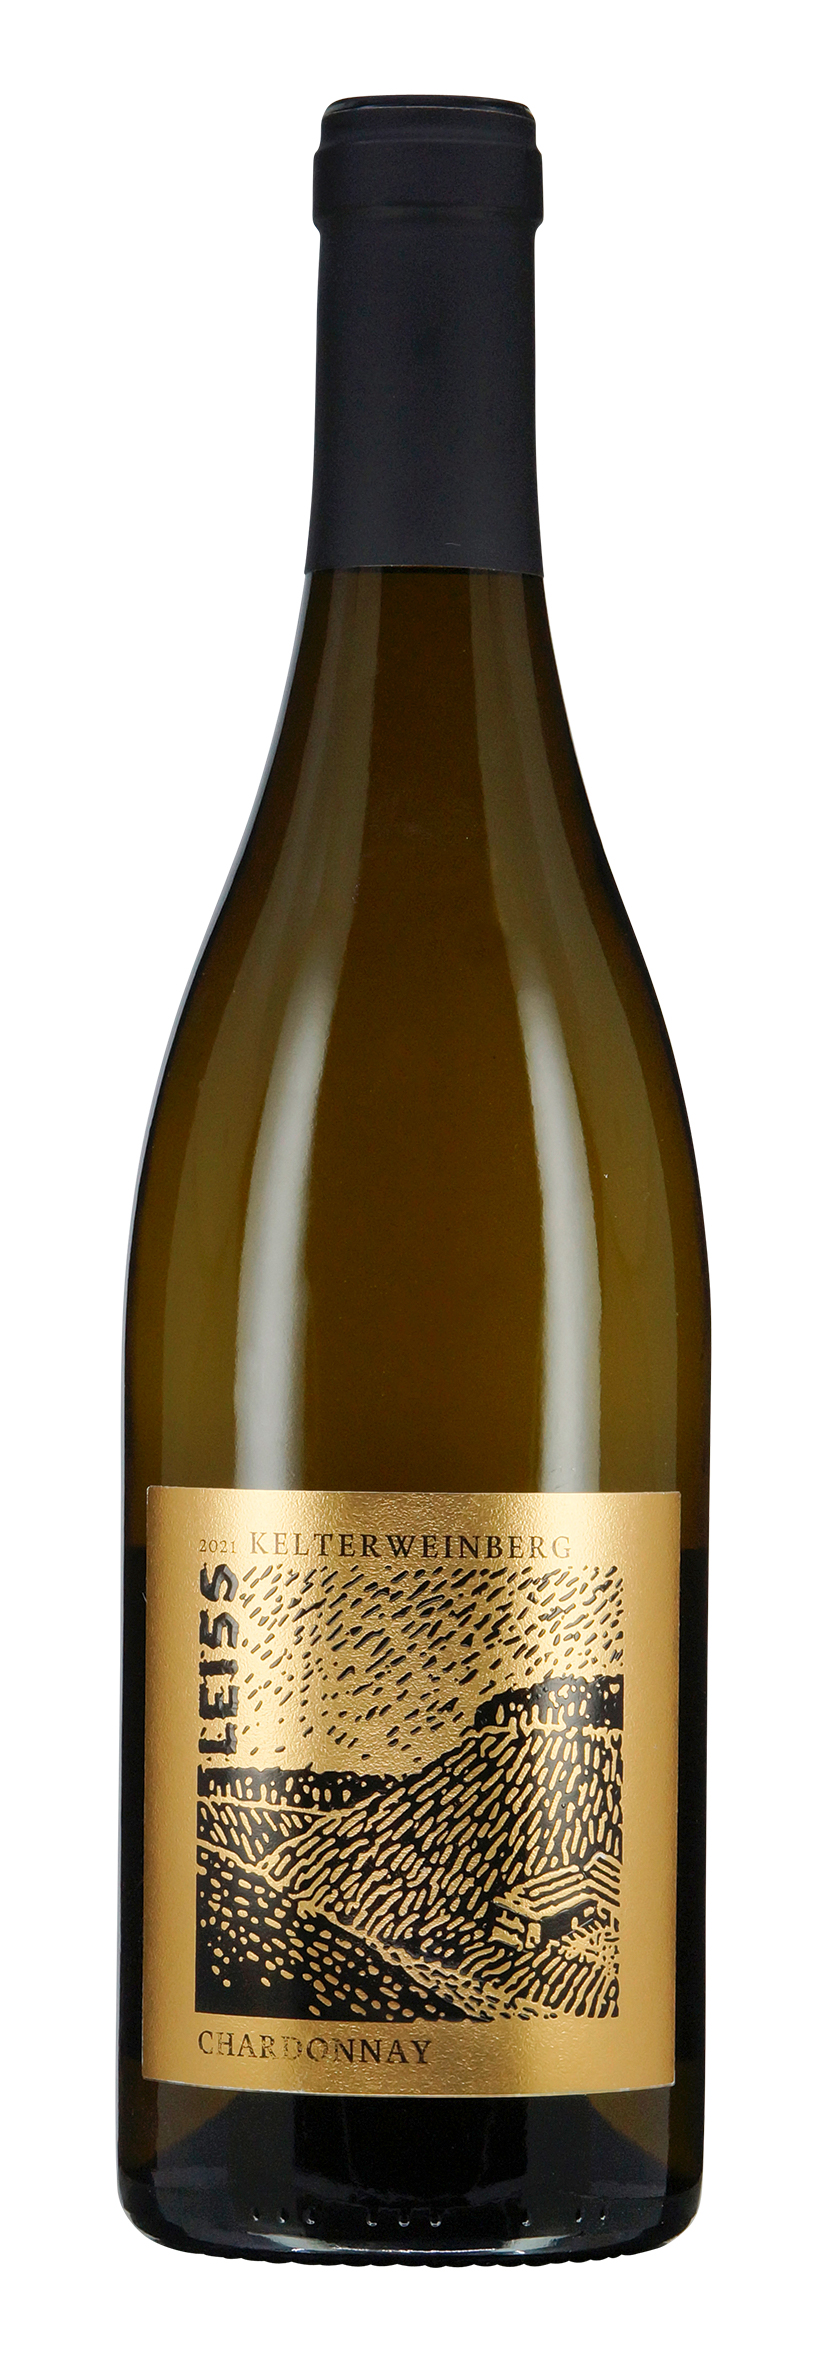 Gellmersbach Kelterweinberg Chardonnay trocken 2021